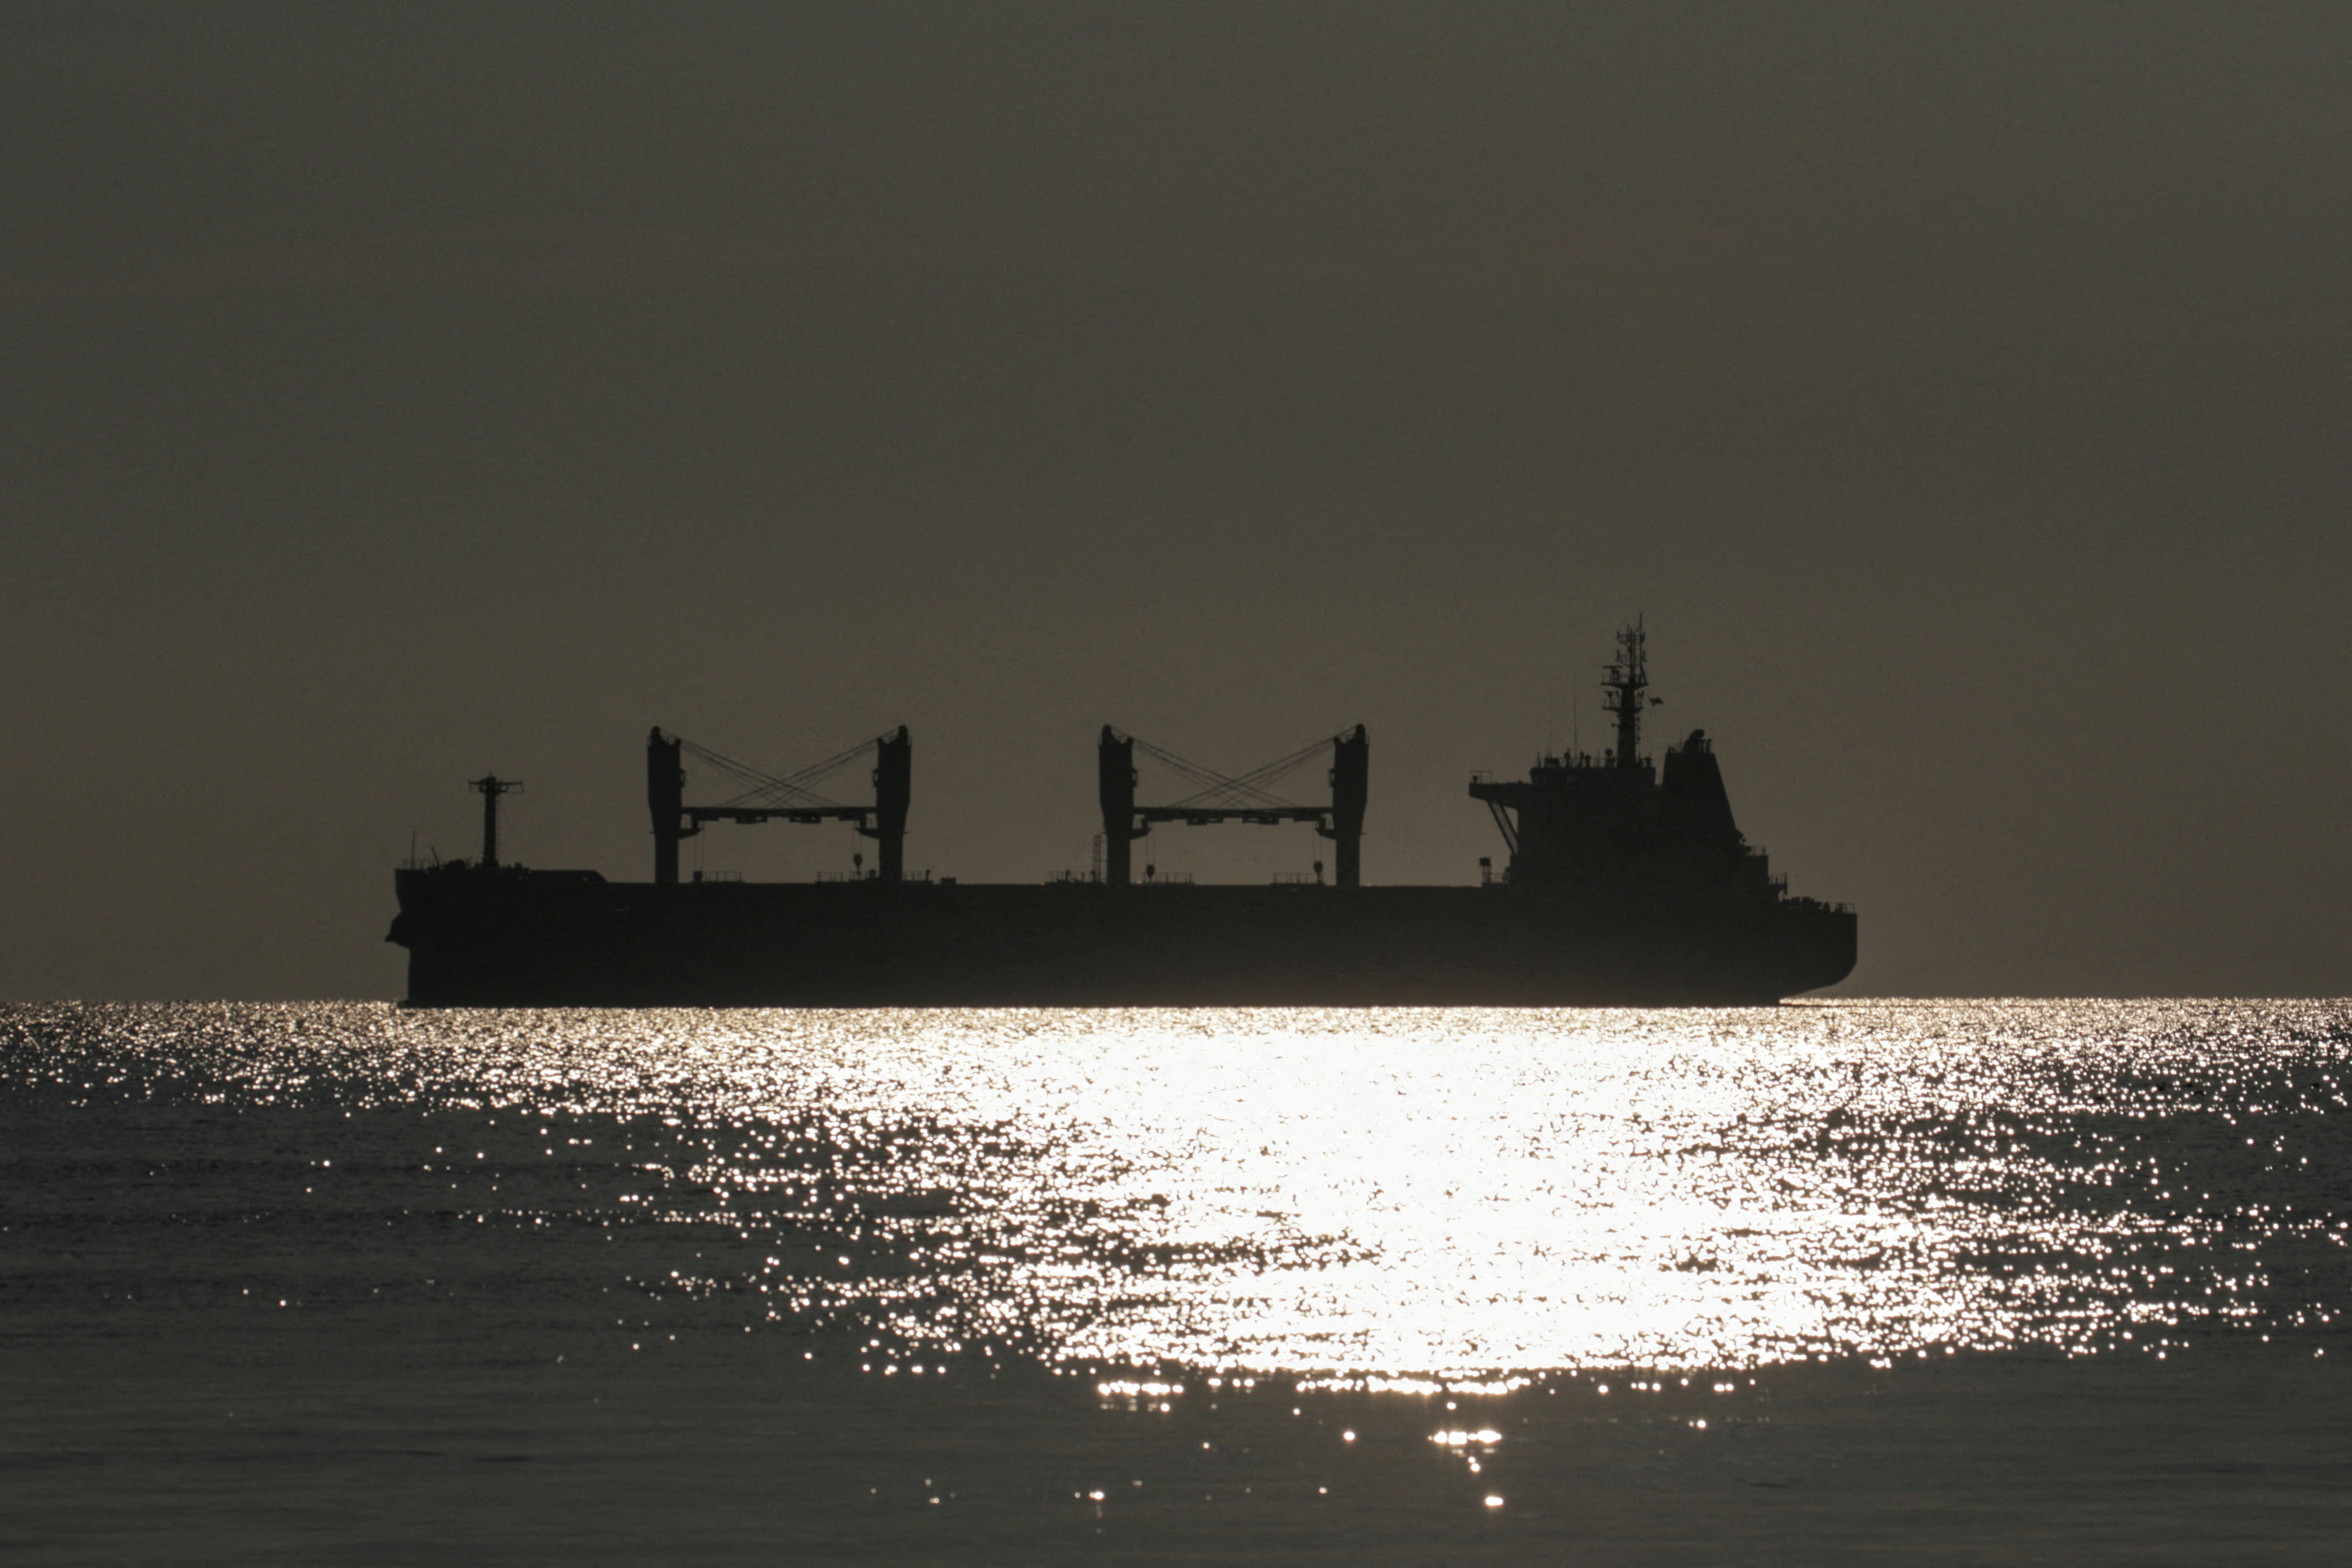 El granelero Rojen abandona el puerto marítimo de Chornomorsk tras reanudar la exportación de grano, en medio del ataque de Rusia a Ucrania, Ucrania 5 de agosto de 2022. REUTERS/Serhii Smolientsev